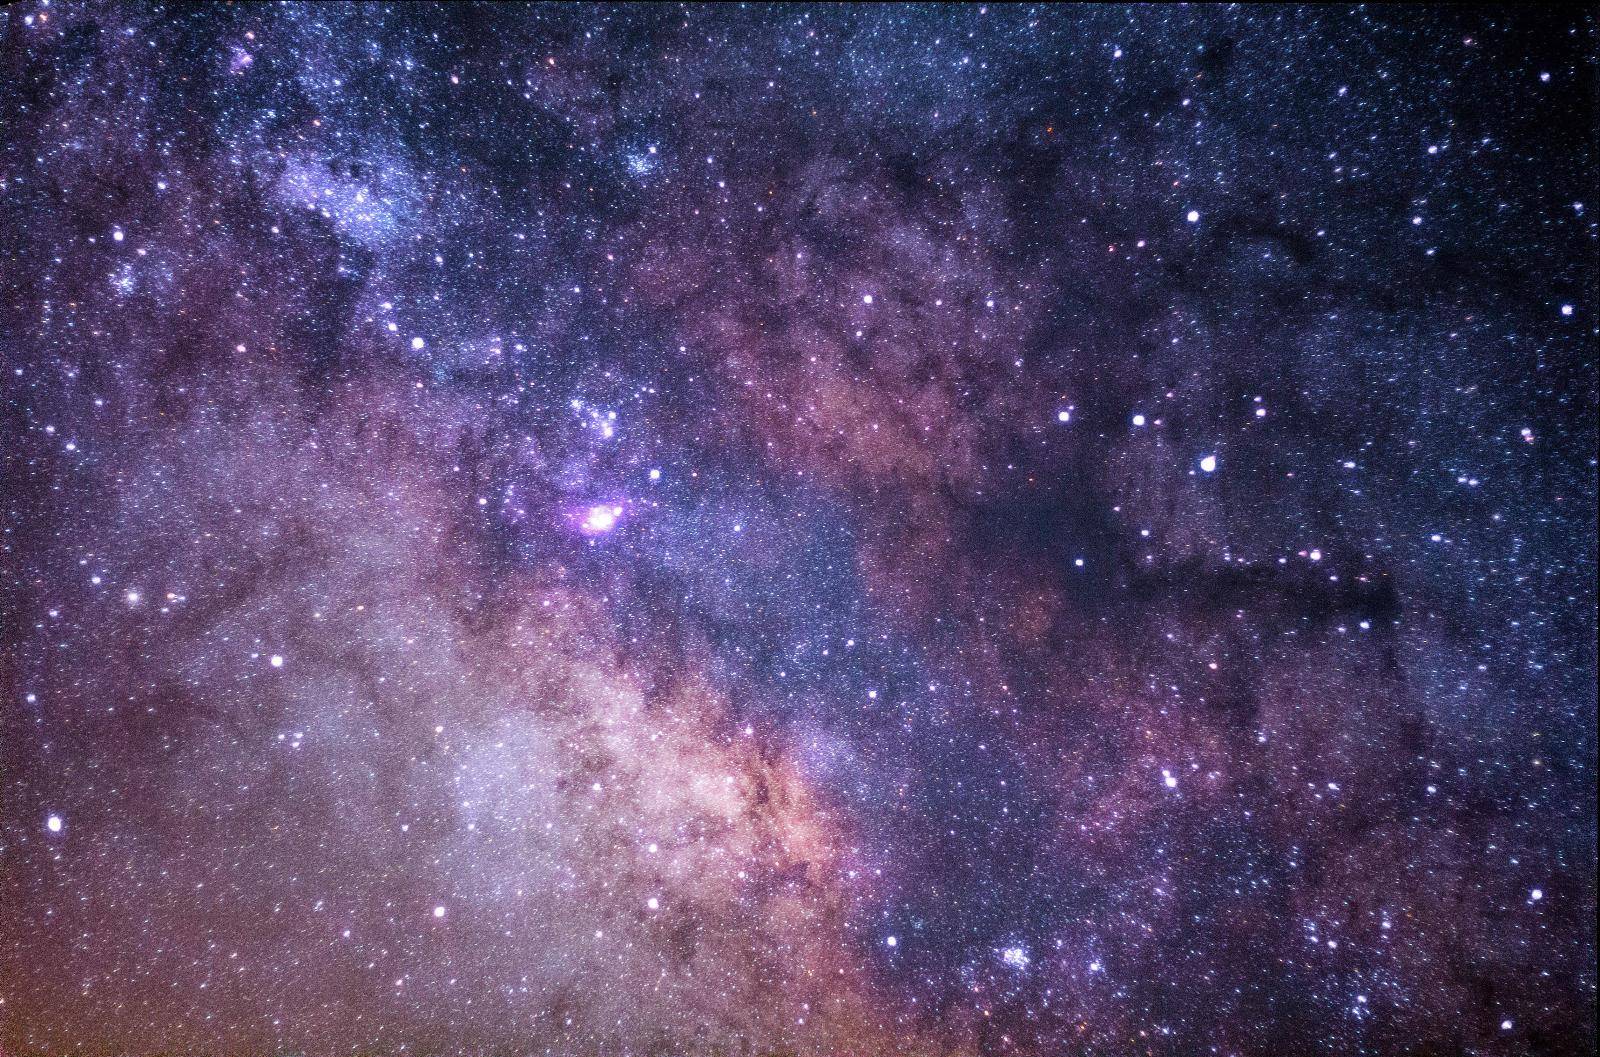 宇宙中有2万亿个星系,我们的银河系有什么特殊的地方?